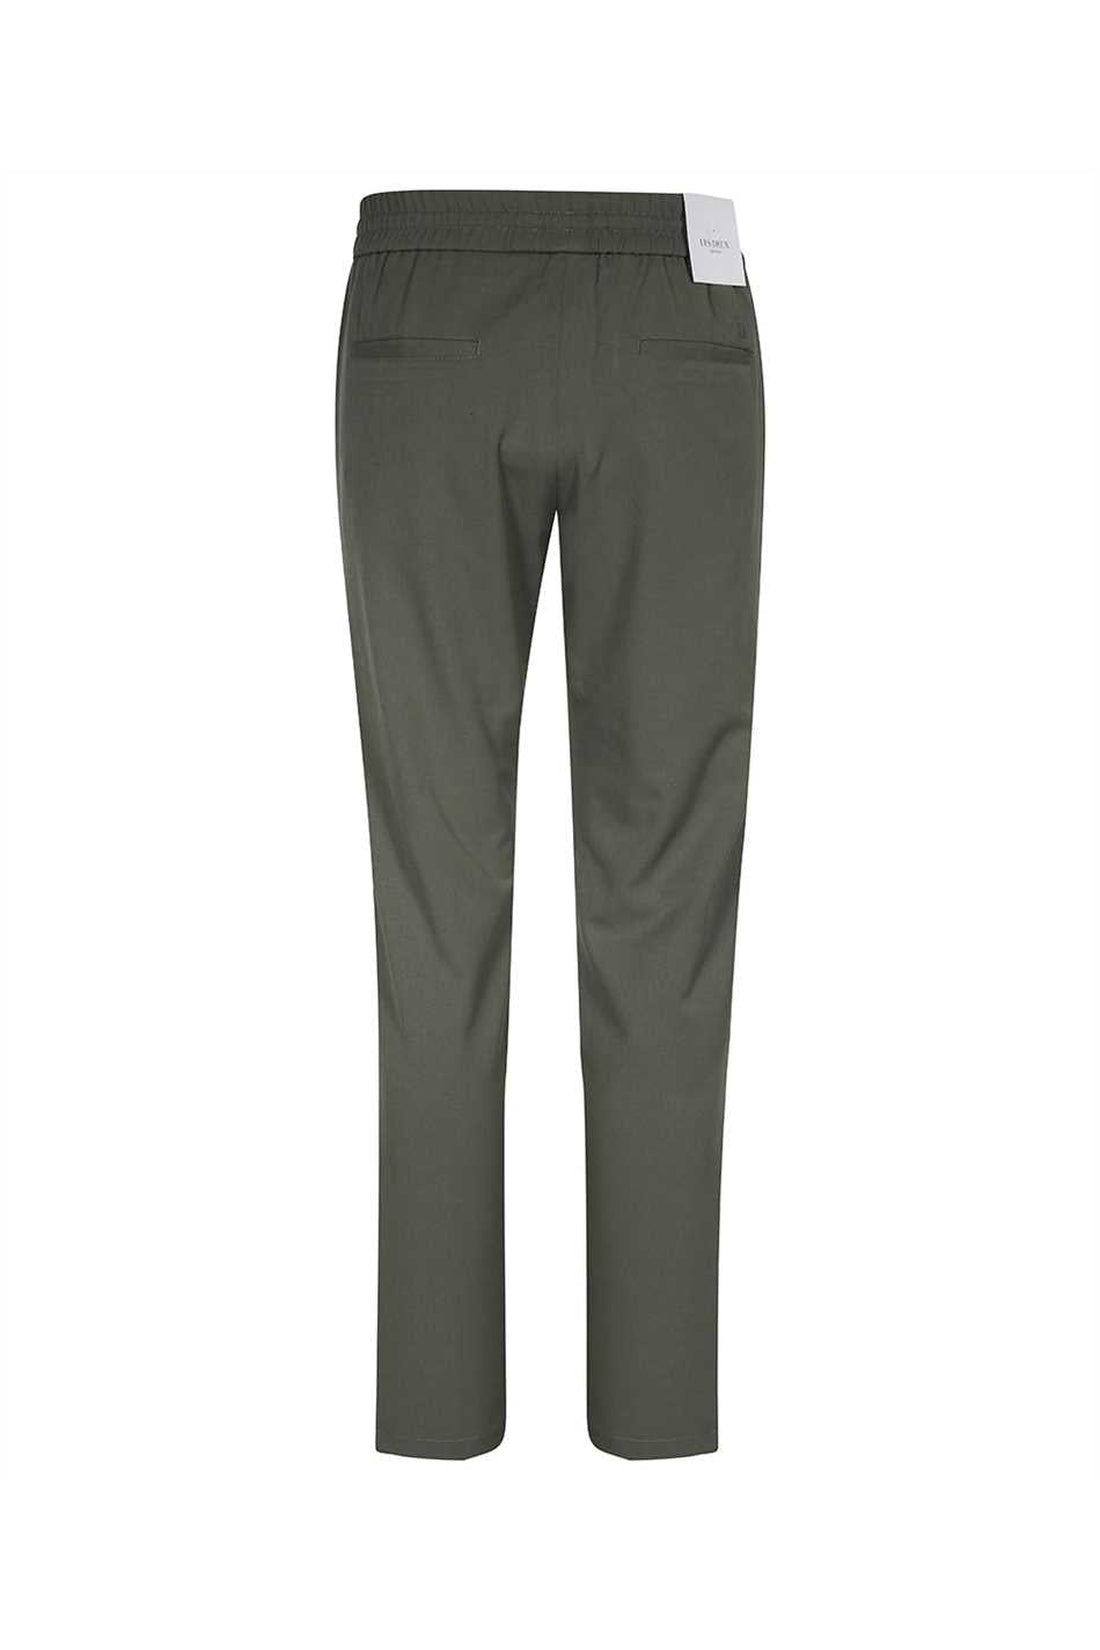 Les Deux-OUTLET-SALE-Elasticated waist trousers-ARCHIVIST